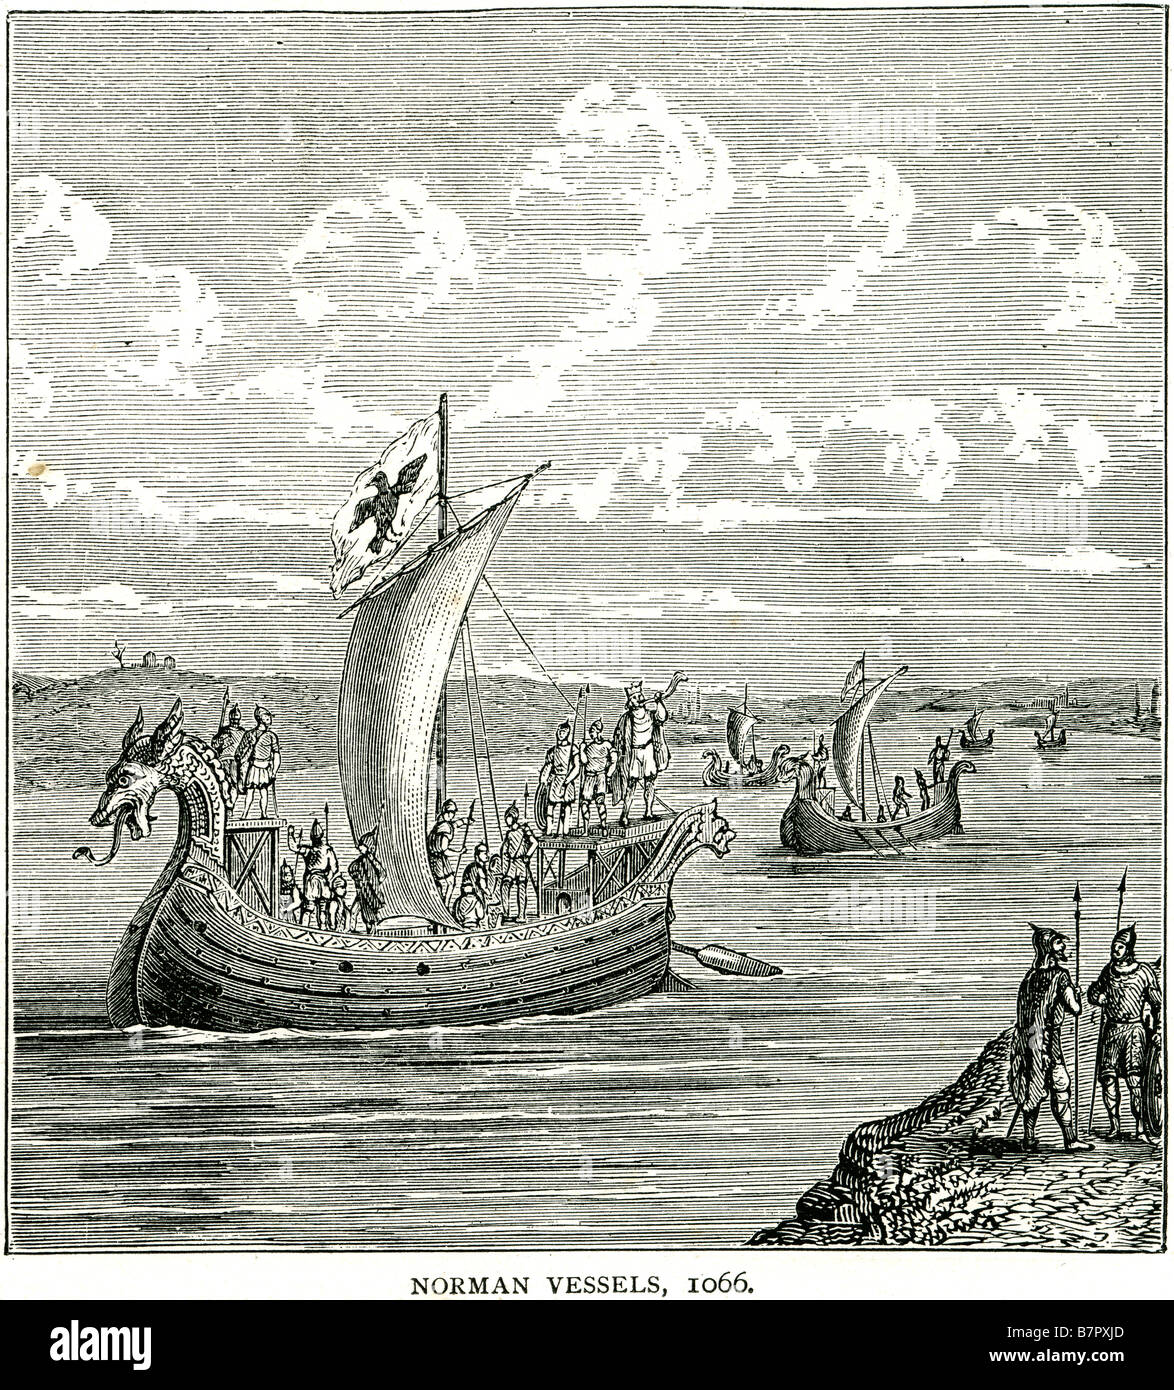 Navire Norman 1066 invasion française de l'estuaire de la rivière mer navire flotte de guerre bataille soldats il y avait deux classes distinctes de Viking sh Banque D'Images